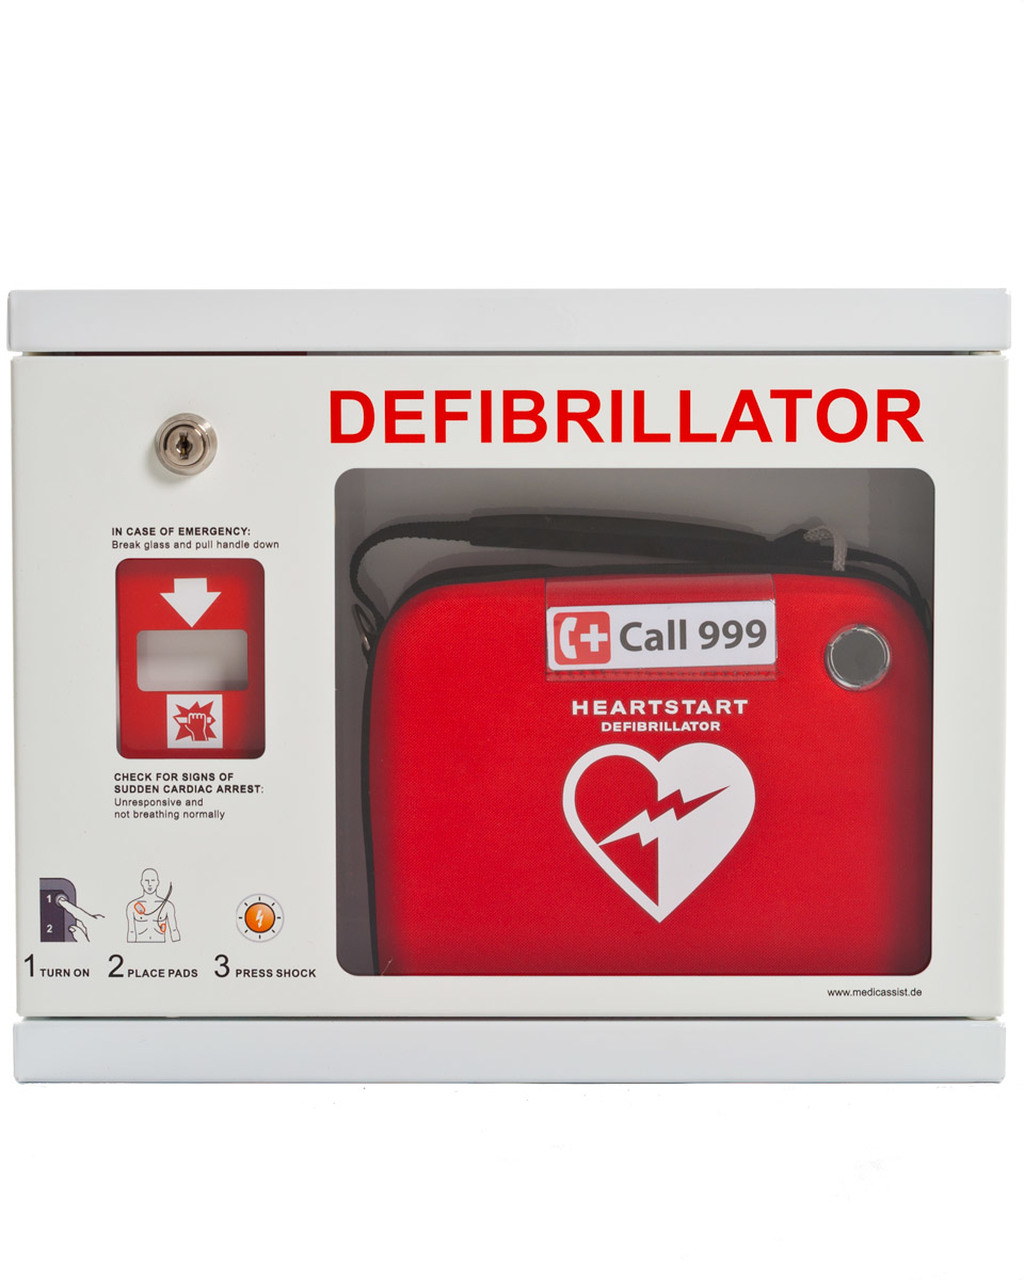 What is Defibrillator?